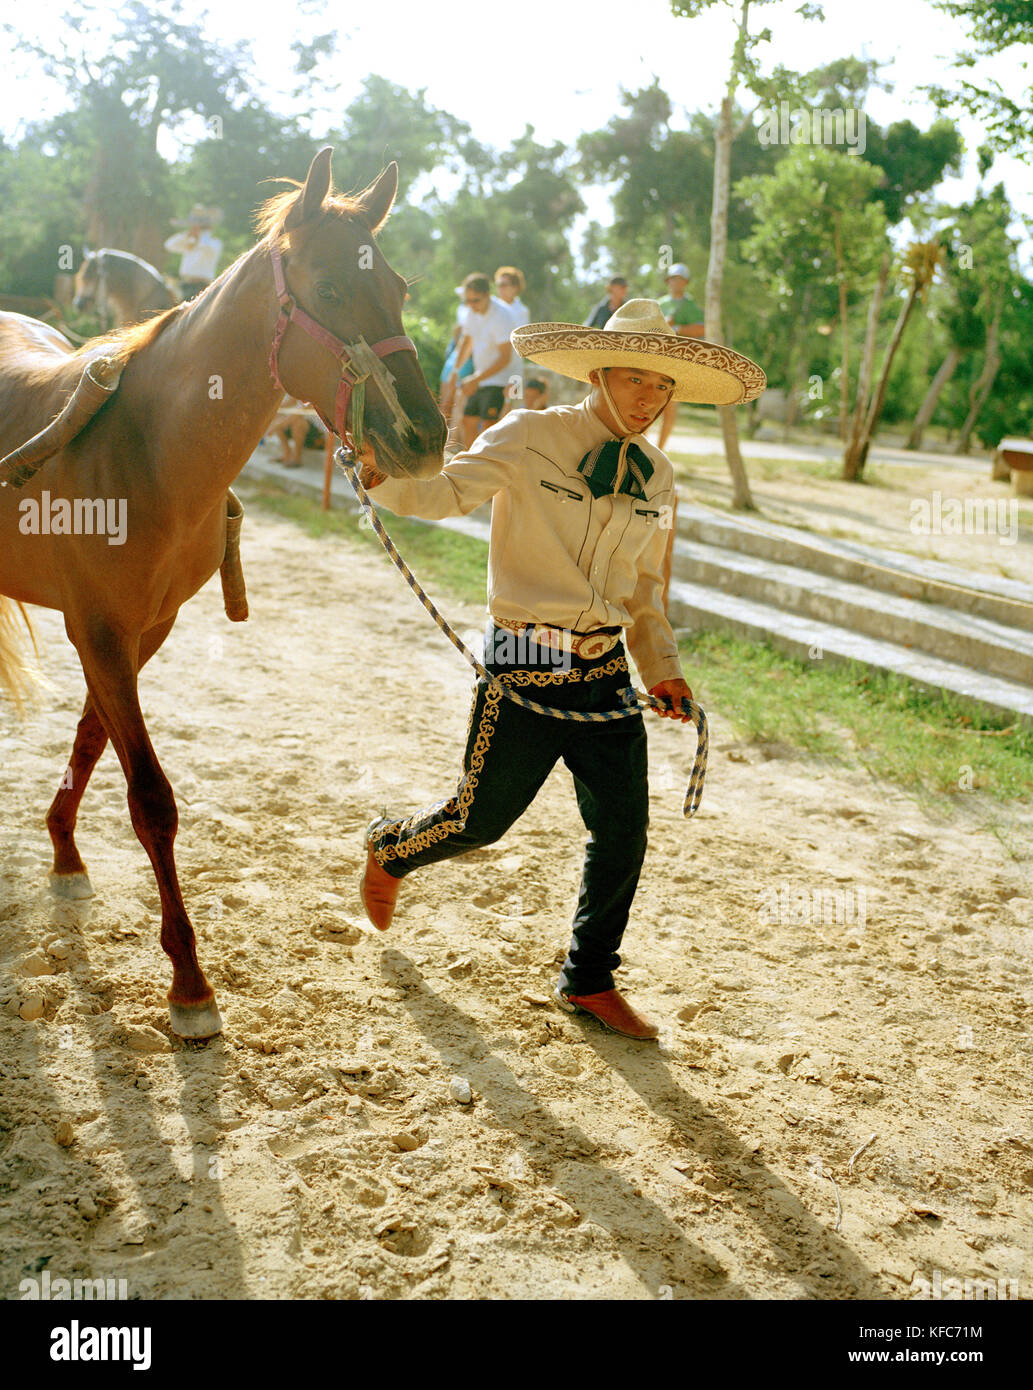 MEXICO, Maya Riviera, Mexican Cowboy leading his horse, Yucatan Peninsula Stock Photo